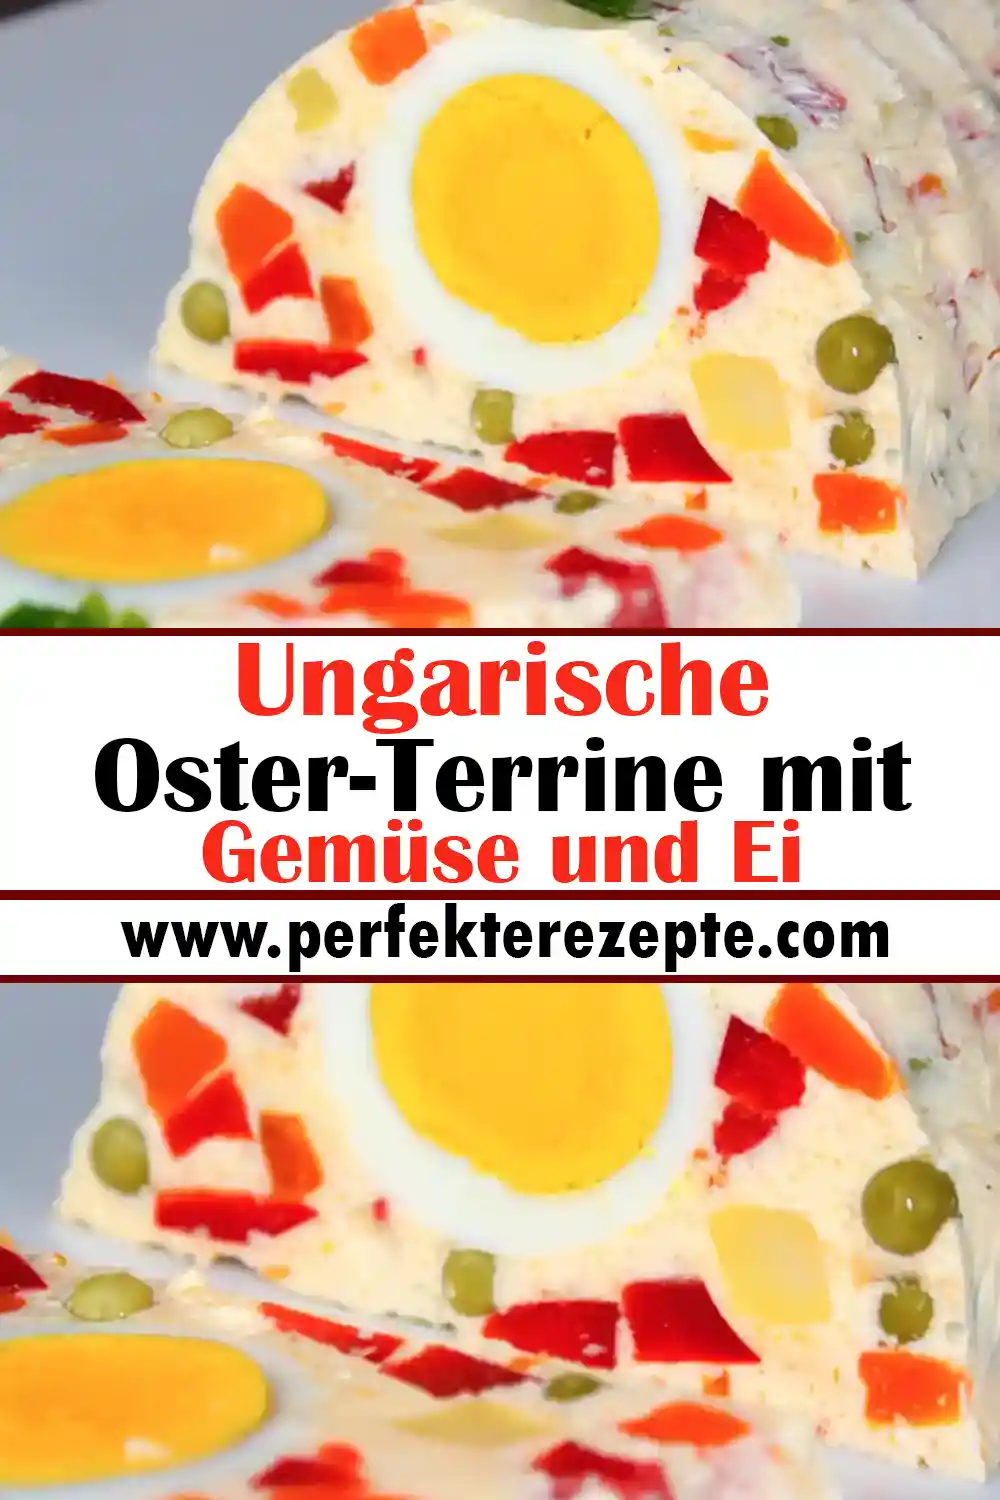 Ungarische Oster-Terrine mit Gemüse und Ei Rezept